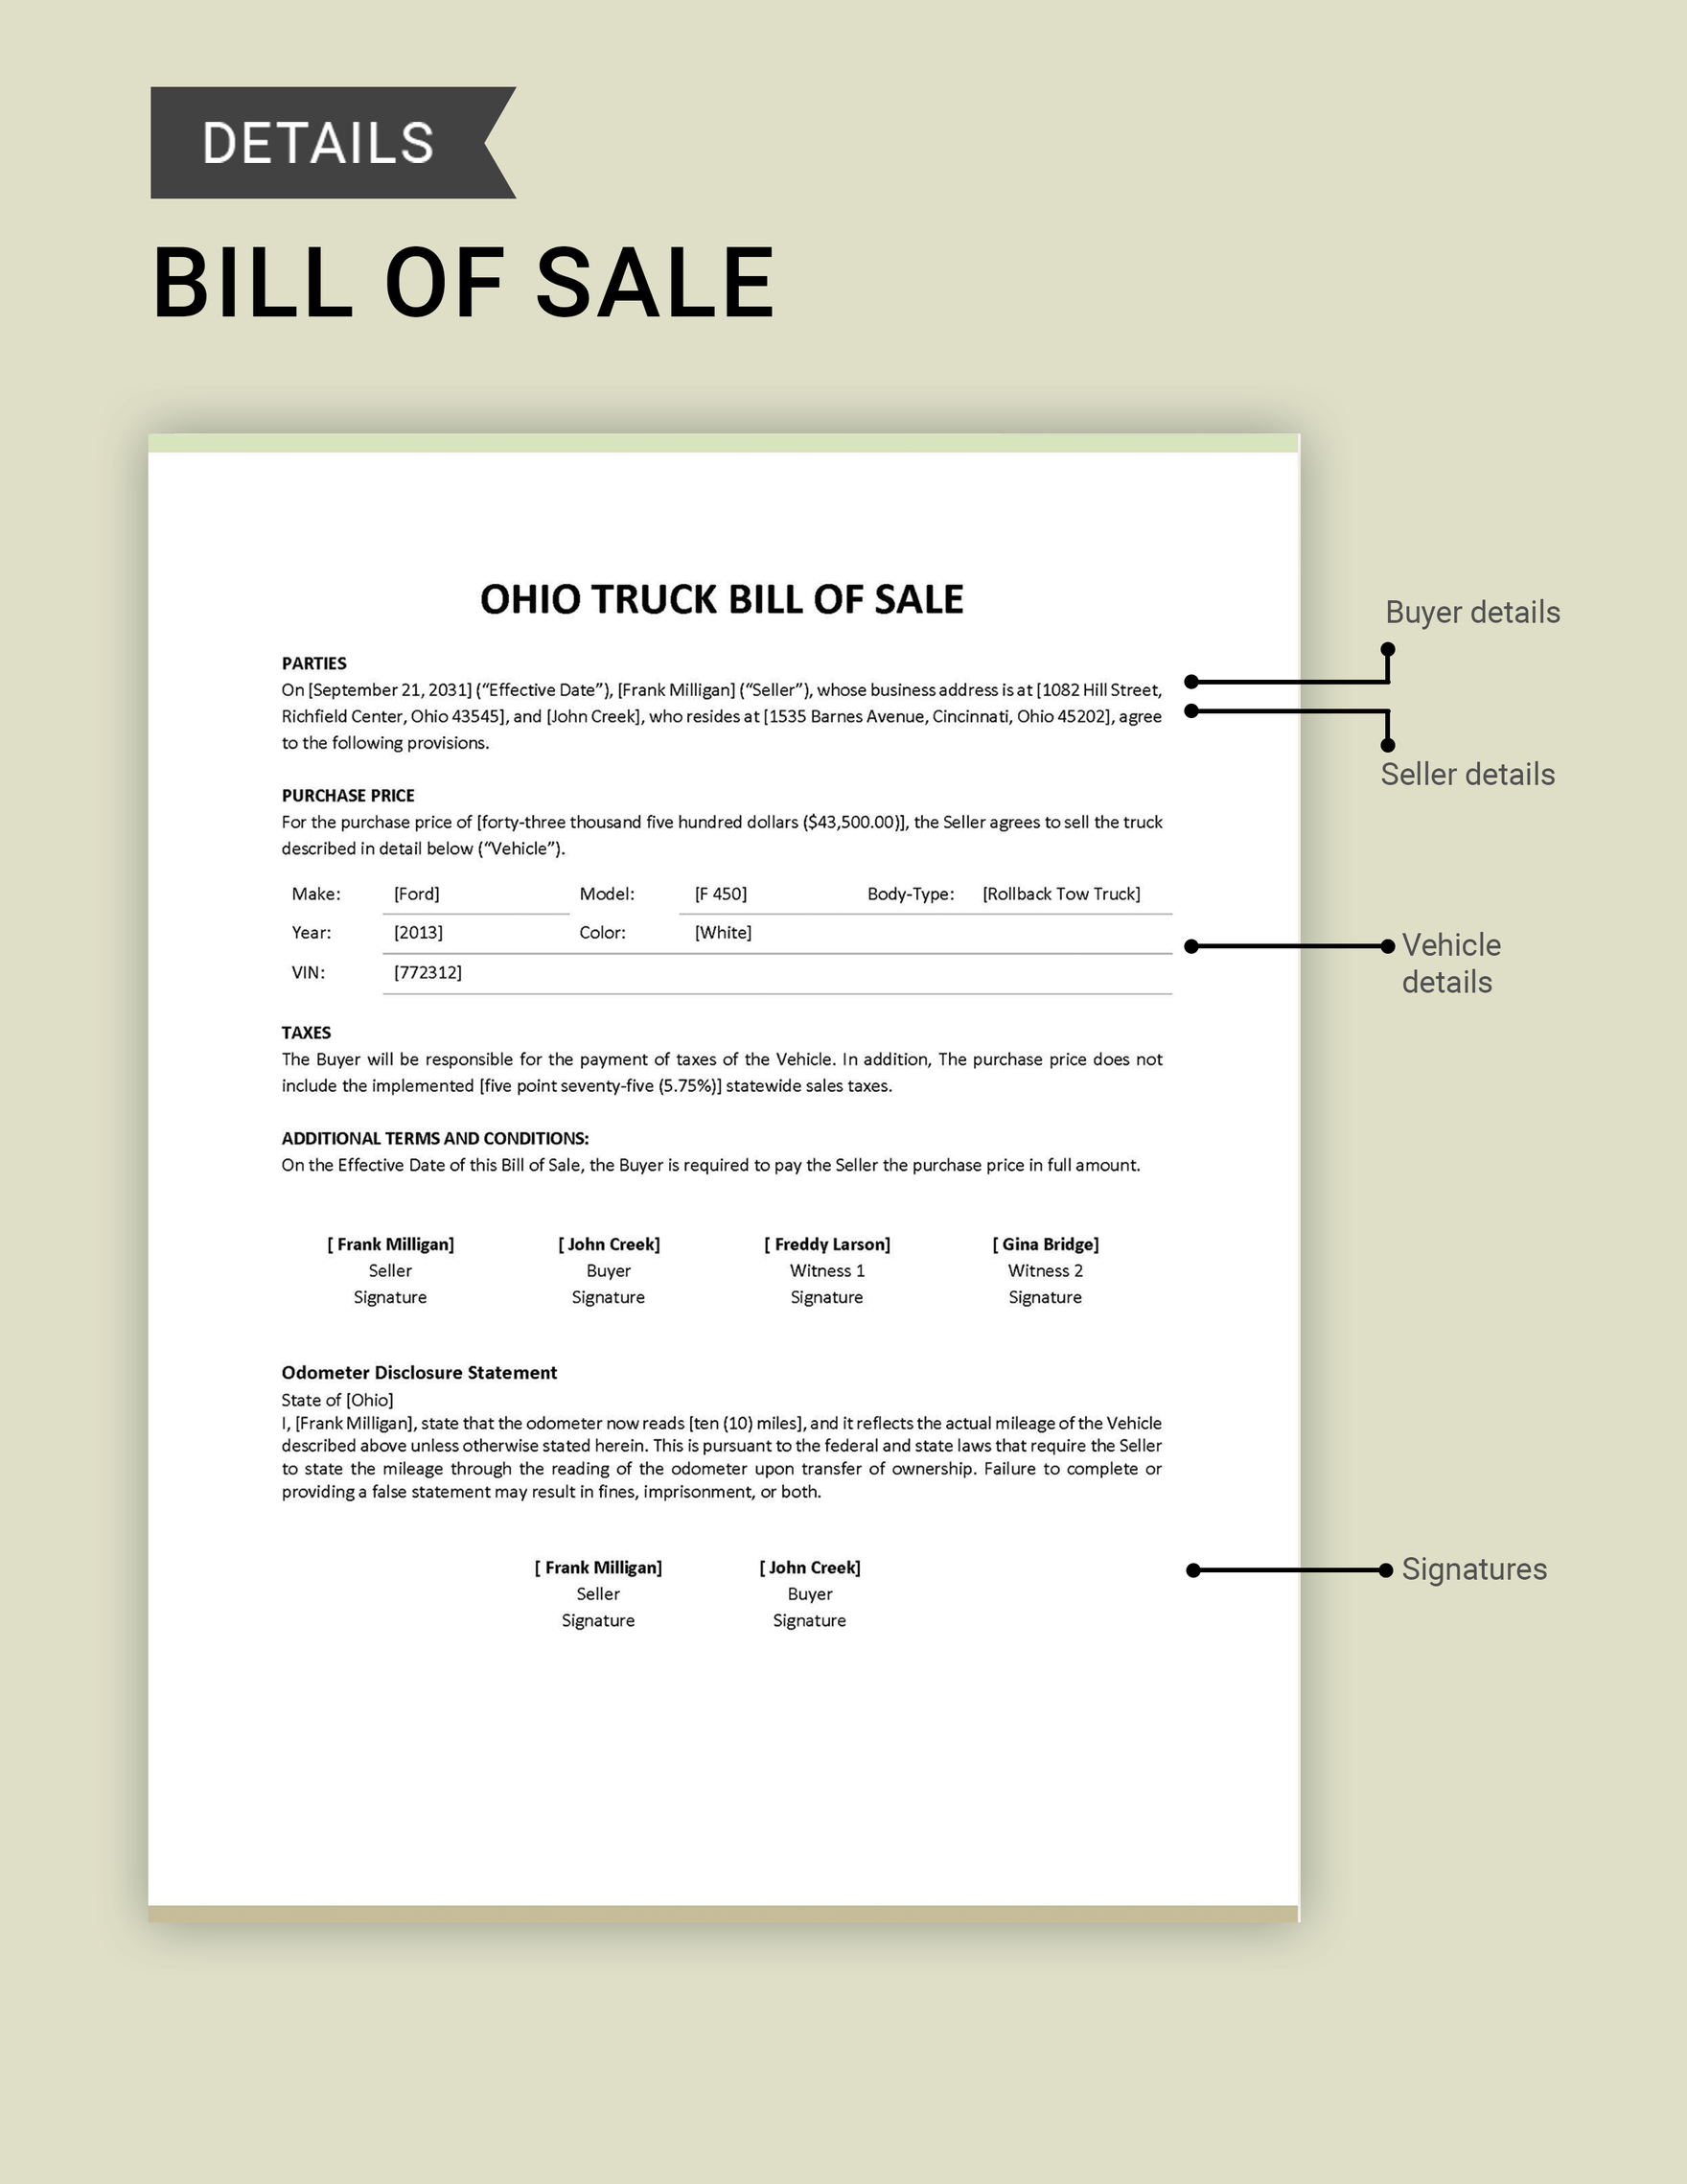 Ohio Truck Bill of Sale Template